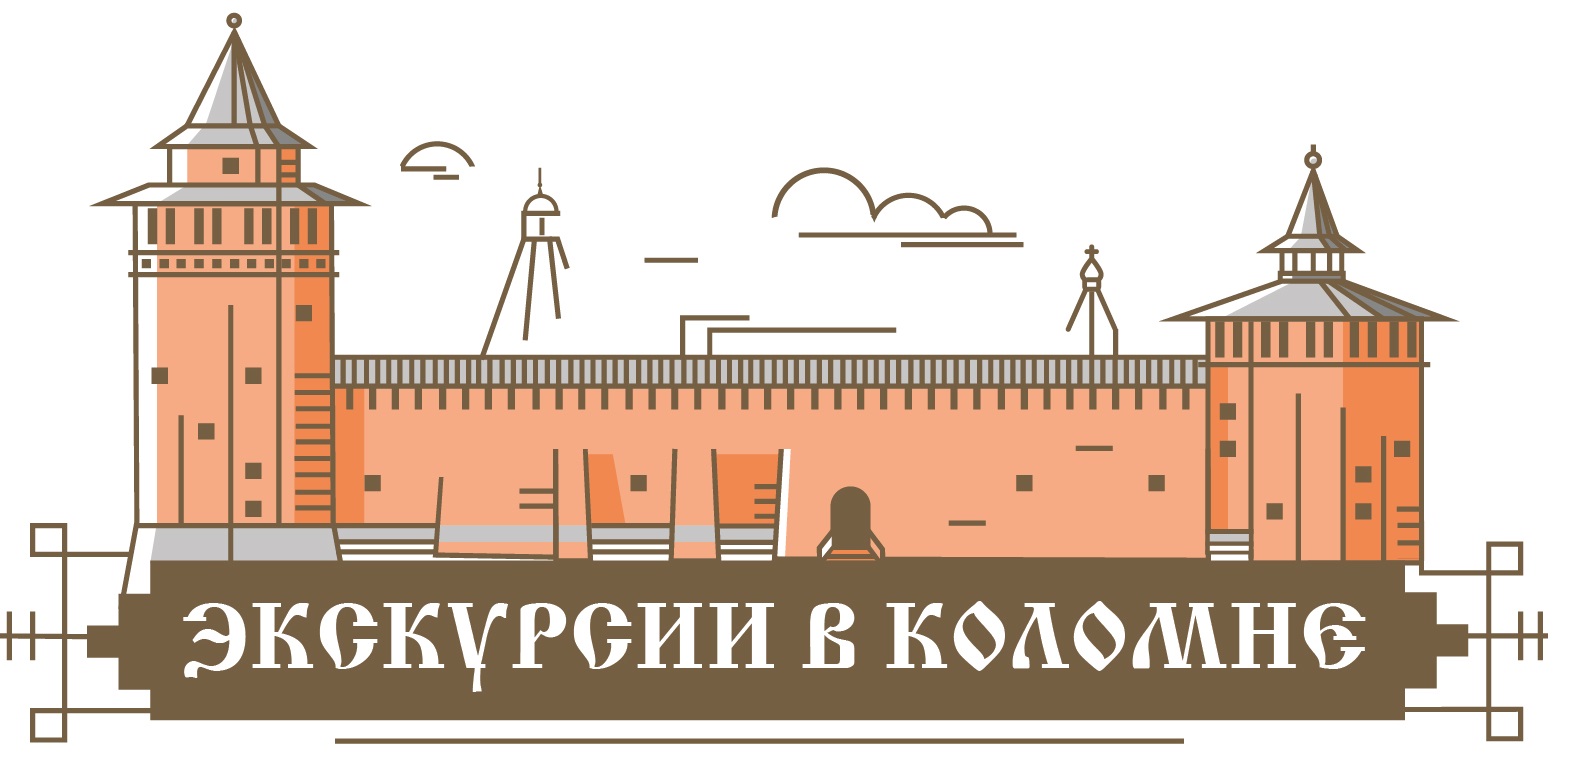 Логотип Экскурсии в Коломне